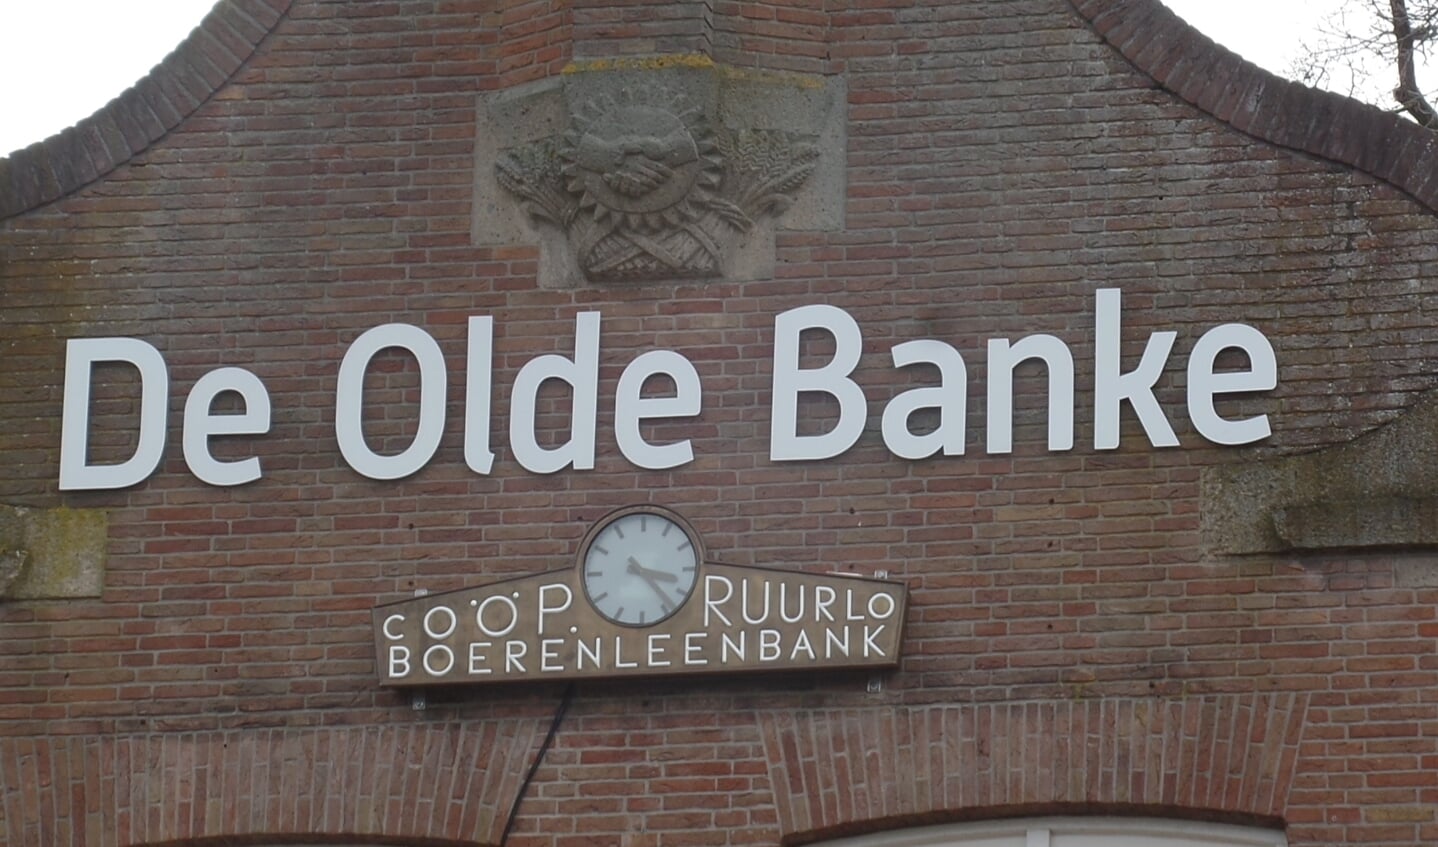 De  klok hangt nu op de voorgevel van De Olde Banke. Foto: Jan Hendriksen 